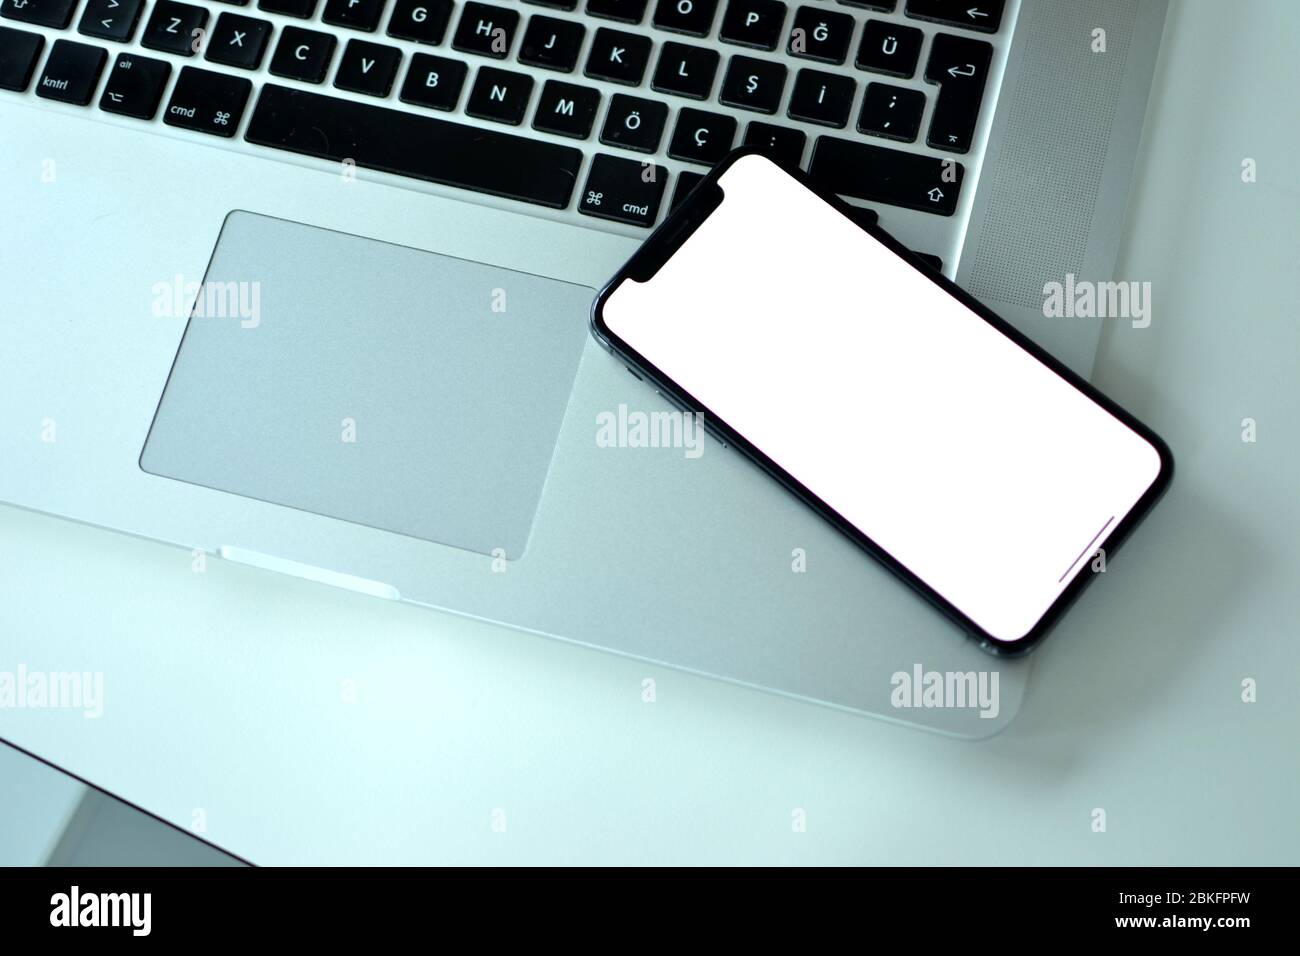 Auf einem MacBook Pro befindet sich ein Apple iPhone XS auf dem Schreibtisch. Es ist üblich für Menschen mit Apple-Produkte sowohl für Mobiltelefone und Laptops. Stockfoto